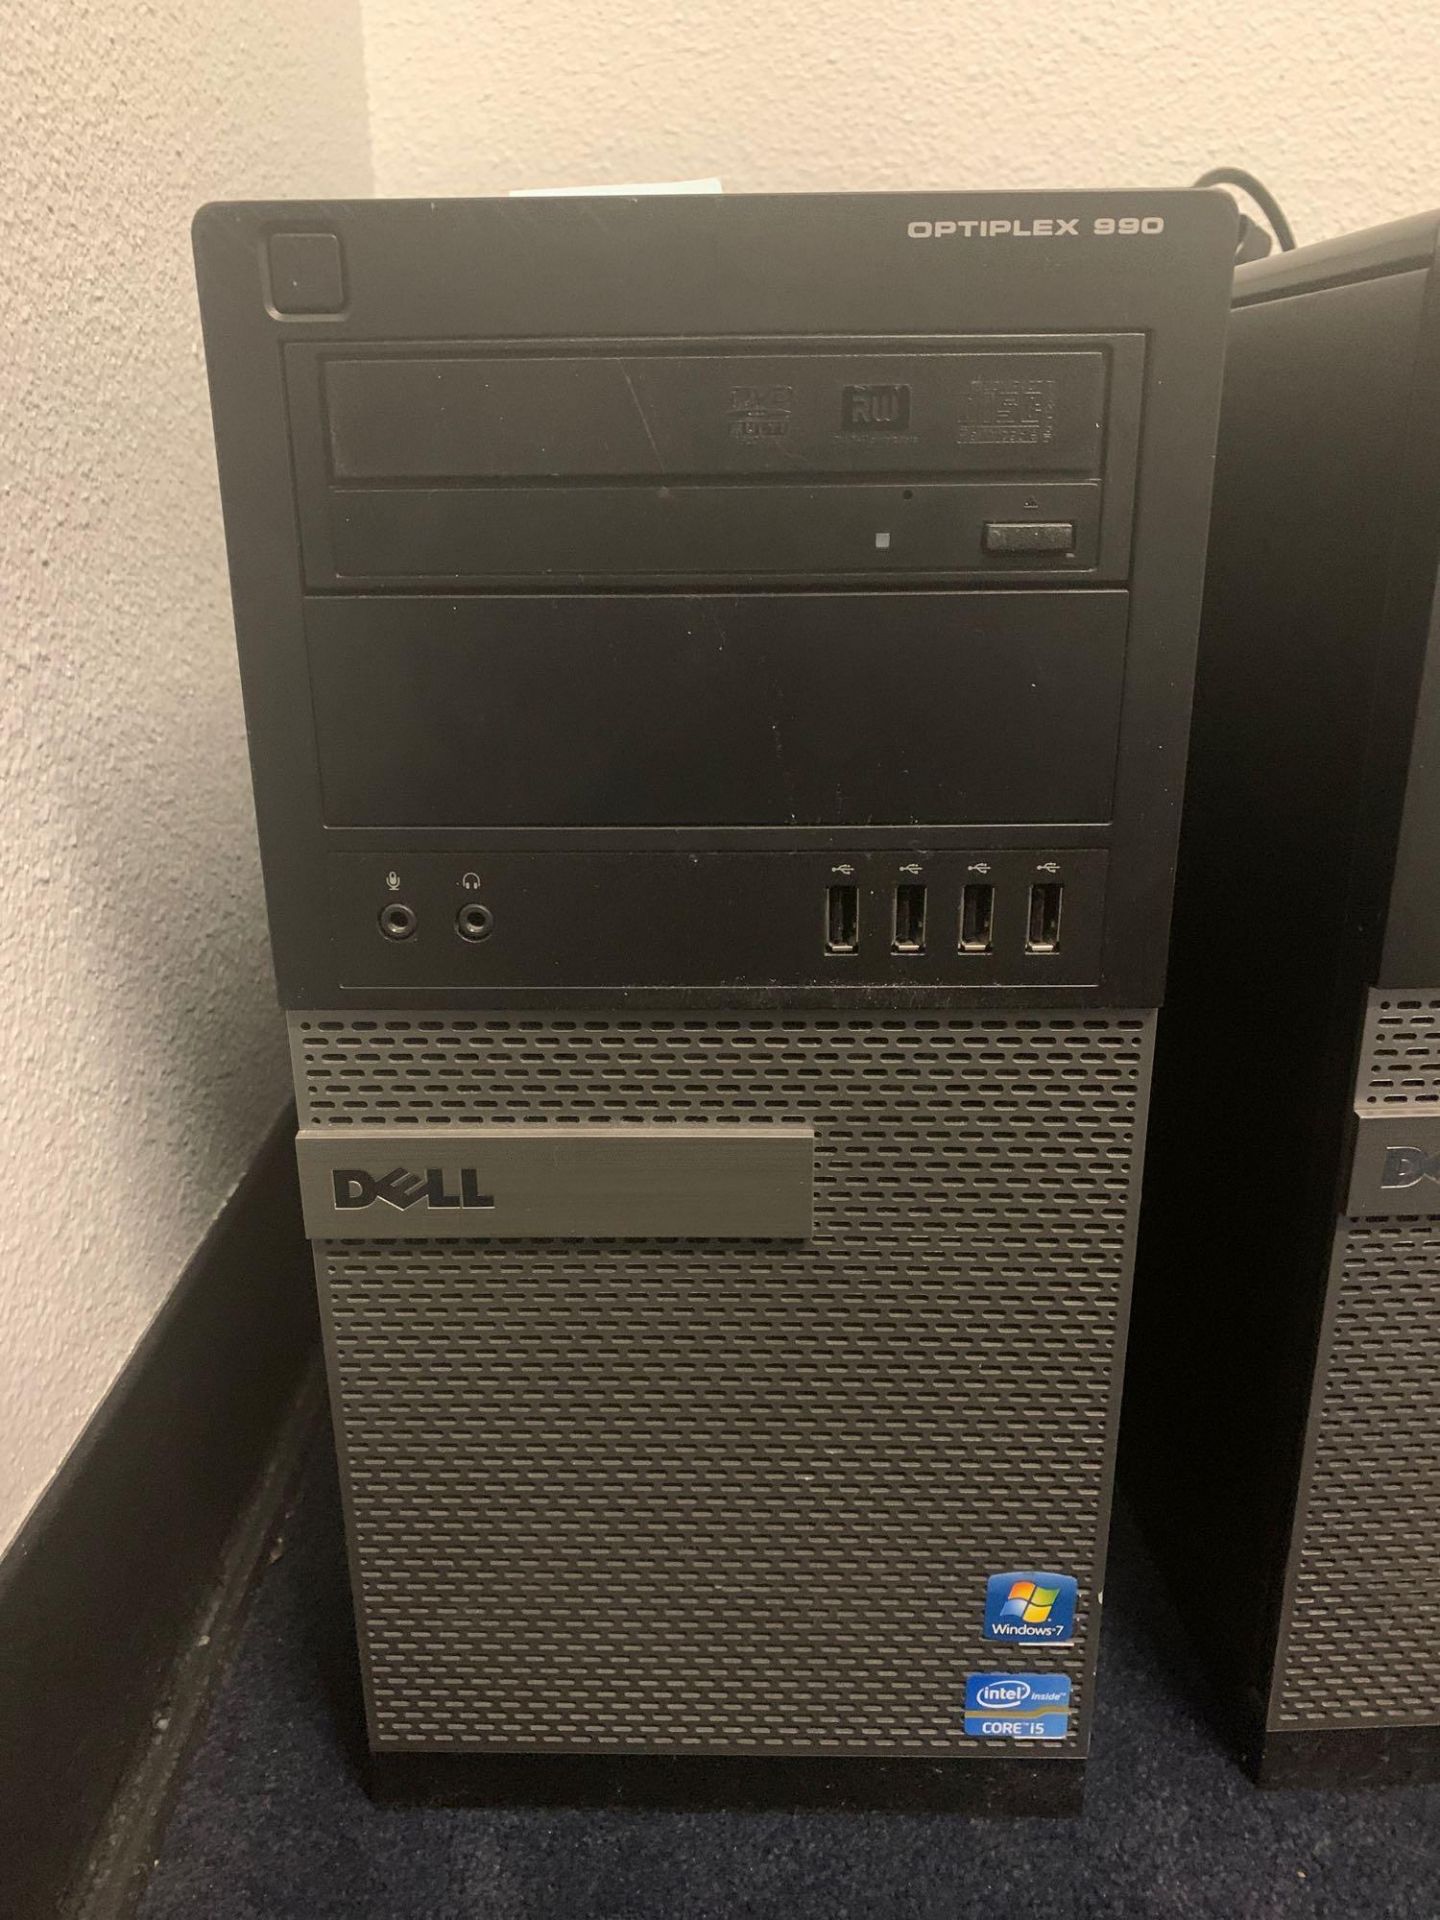 Dell Optiplex 990 Computer